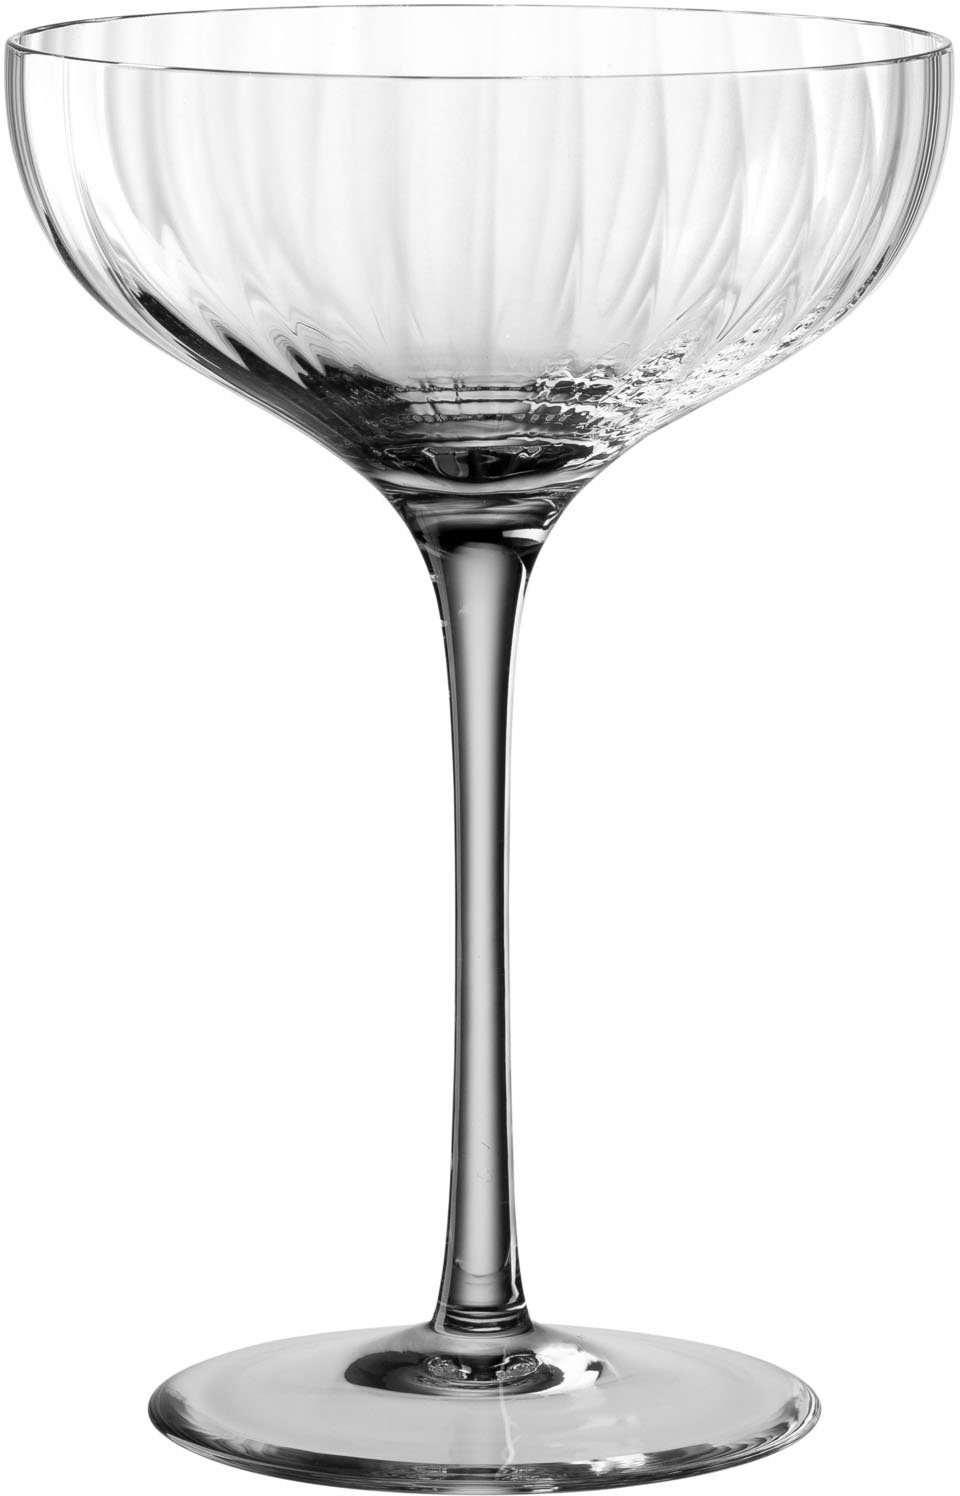 LEONARDO Champagnerglas POESIA, Kristallglas, 260 ml, 6-teilig